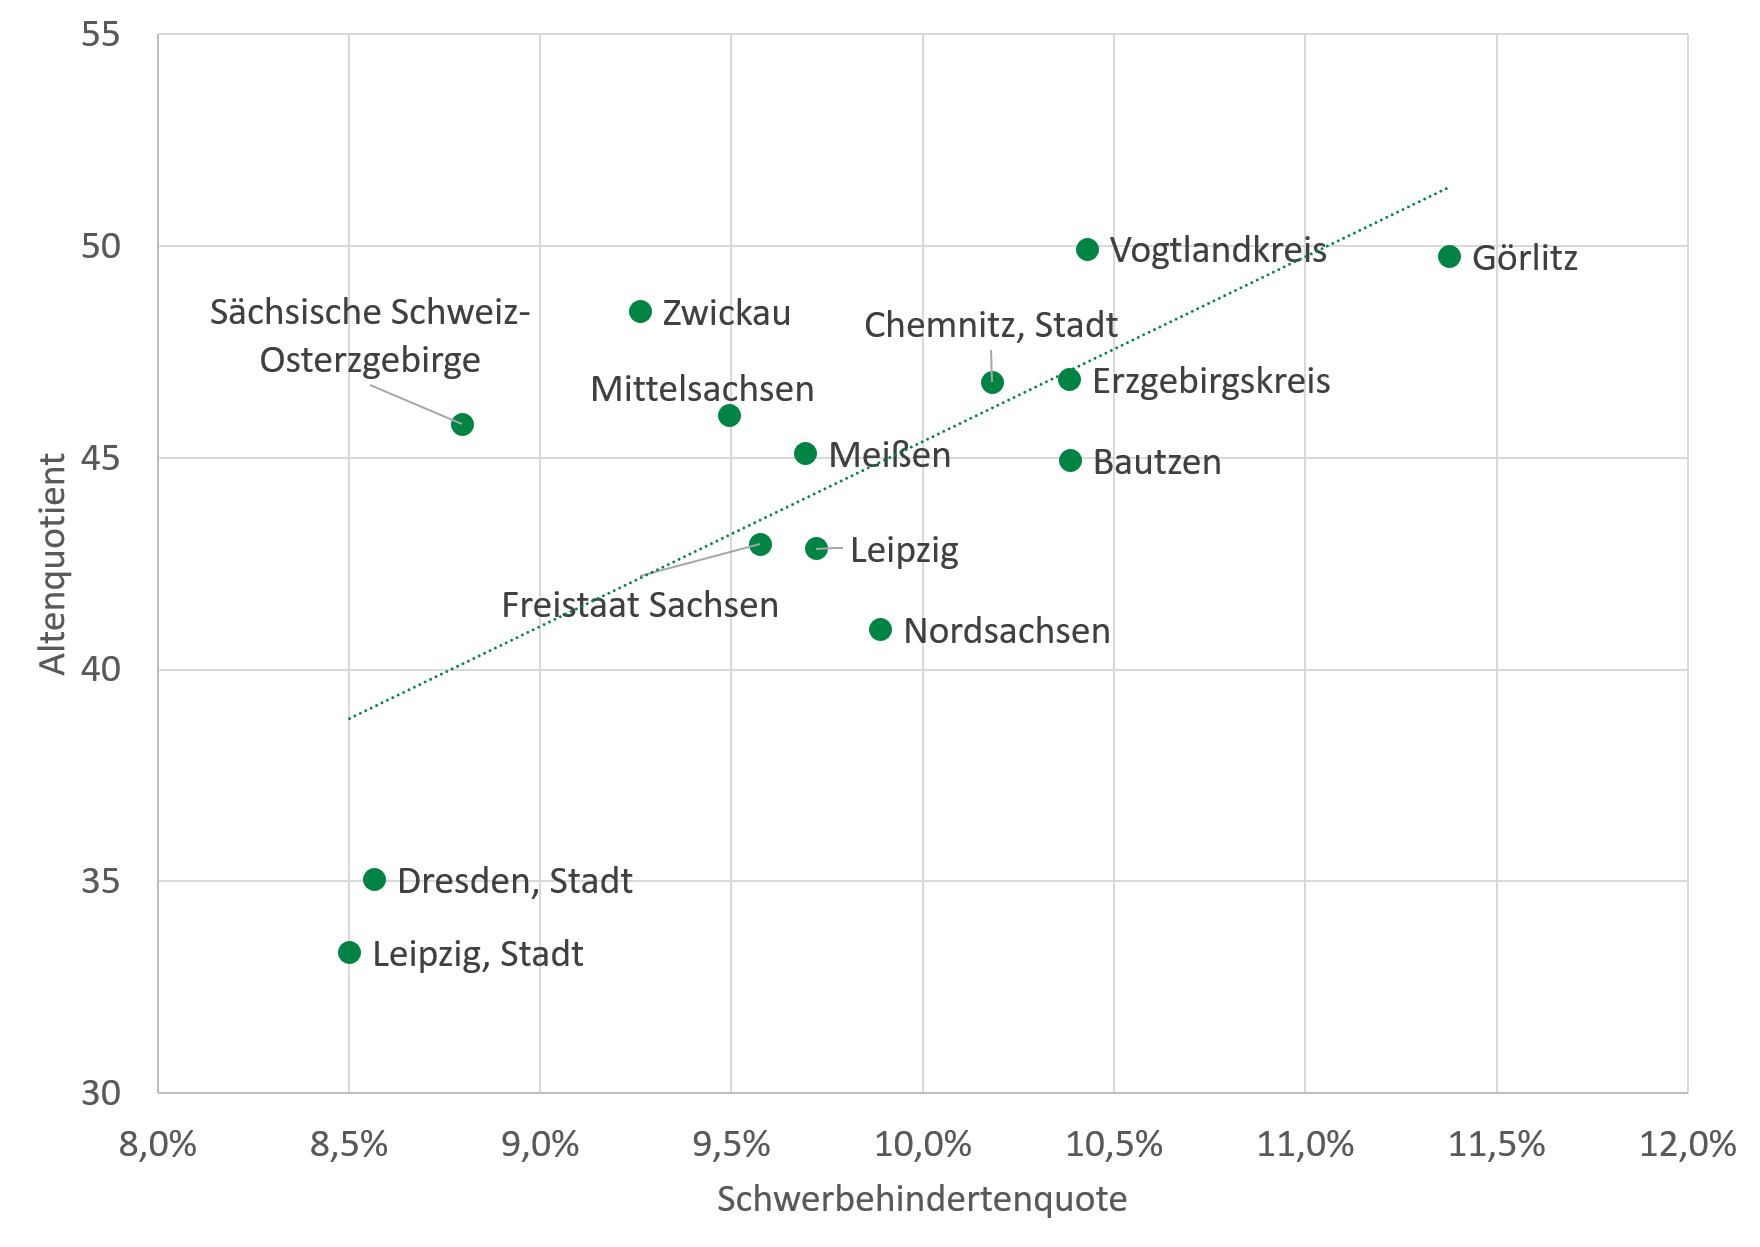 Die Schwerbehindertenquote war 2015 im Vogtlandkreis mit 10,4 Prozent und in Görlitz mit 11,4 Prozent in Sachsen am höchsten. Beide Landkreise wiesen 2015 einen hohen Altenquotienten auf. In Kreisfreien Städten mit niedrigem Altersquotient von 35 oder niedriger. In Leipzig und Dresden lag die Schwerbehindertenquote bei 8,5 bis 8,6 Prozent. Die Grafik zeigt den positiven Zusammenhang der beiden Quotienten für alle Landkreise und Kreisfreien Städte.